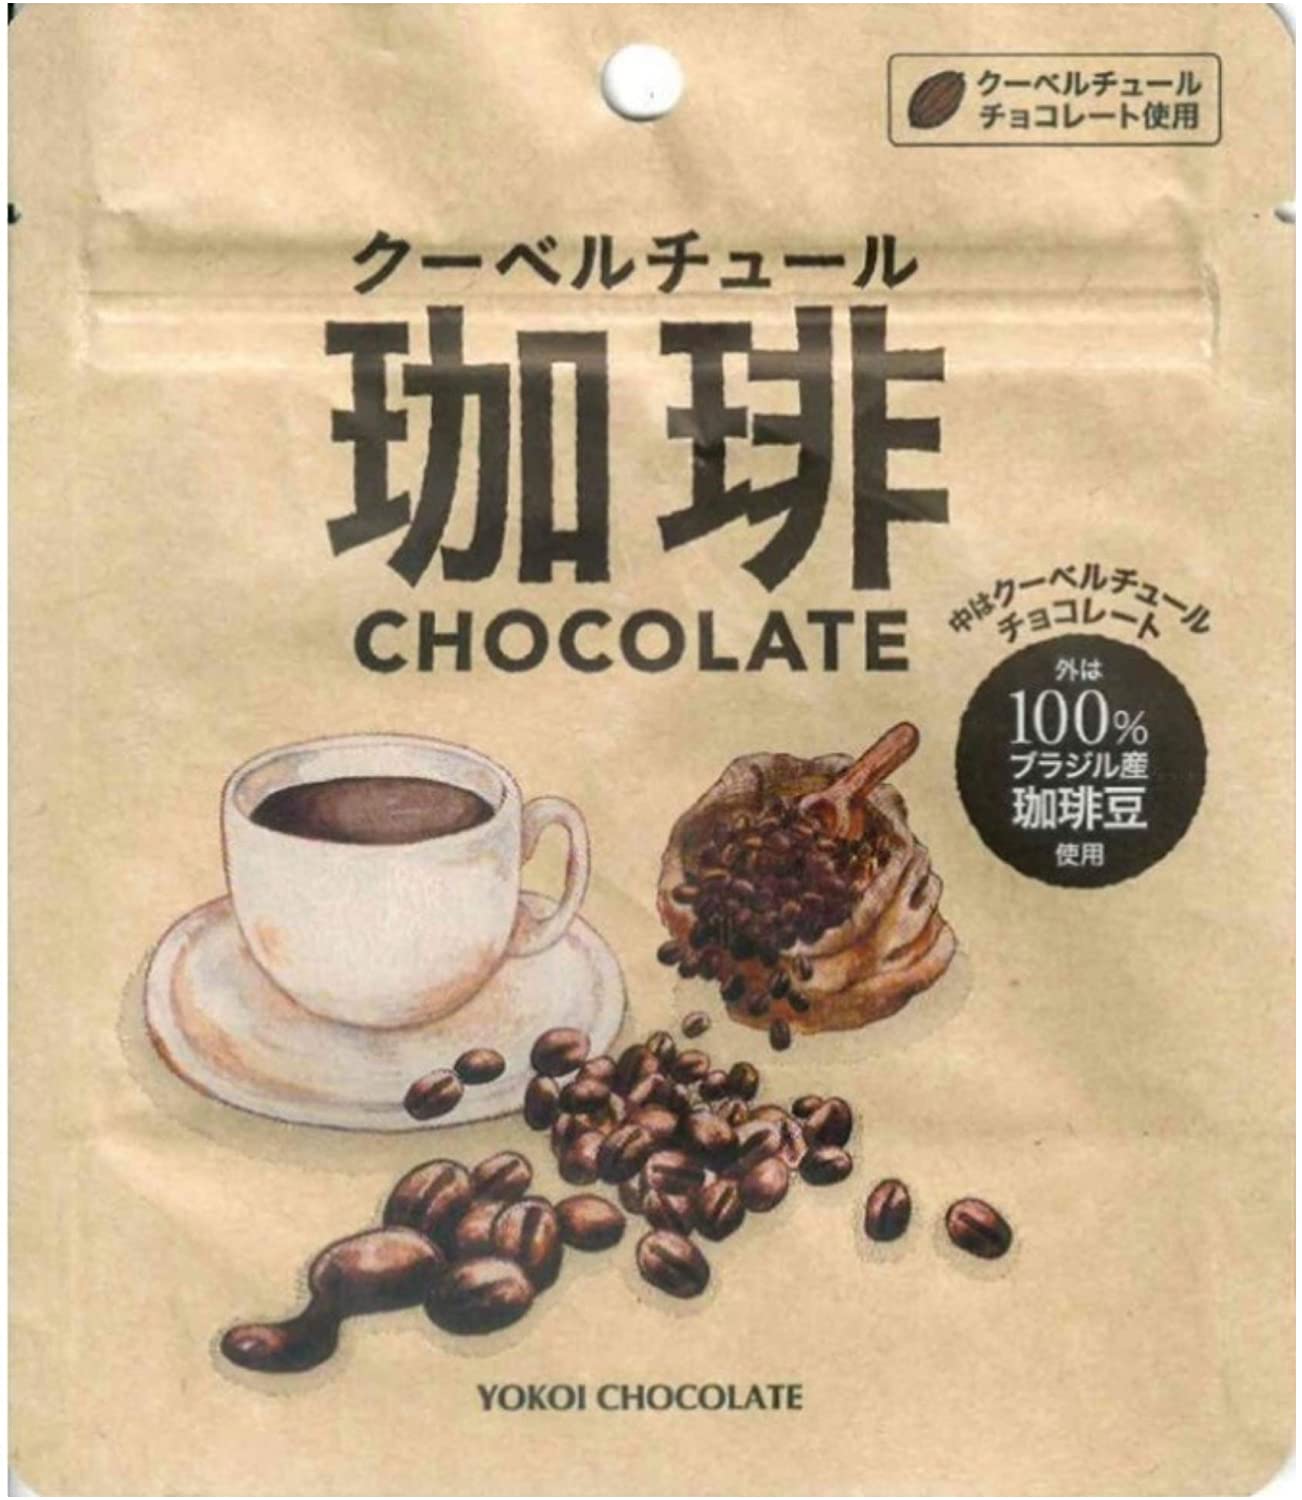 横井チョコレート株式会社 クーベルチュール珈琲チョコレート